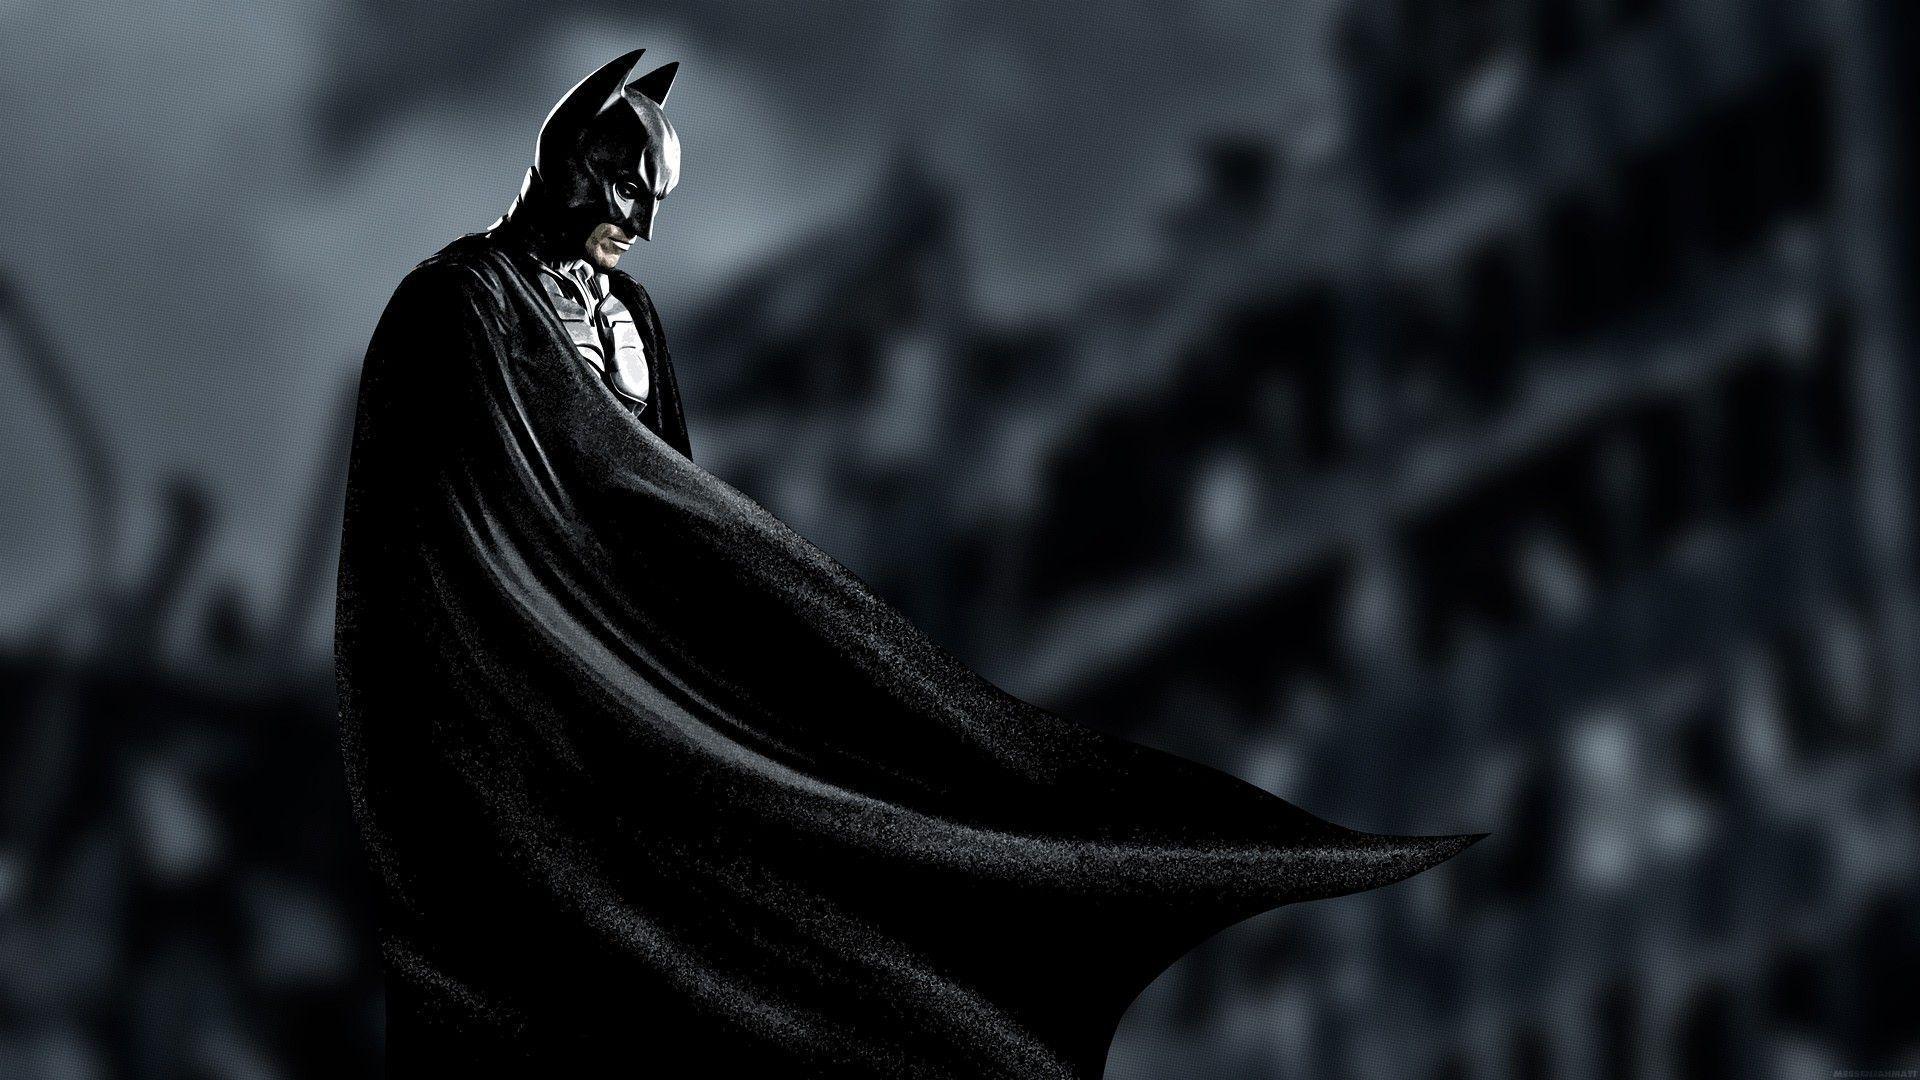 Batman Wallpaper 1080p Download Movie HD Batman Wallpaper